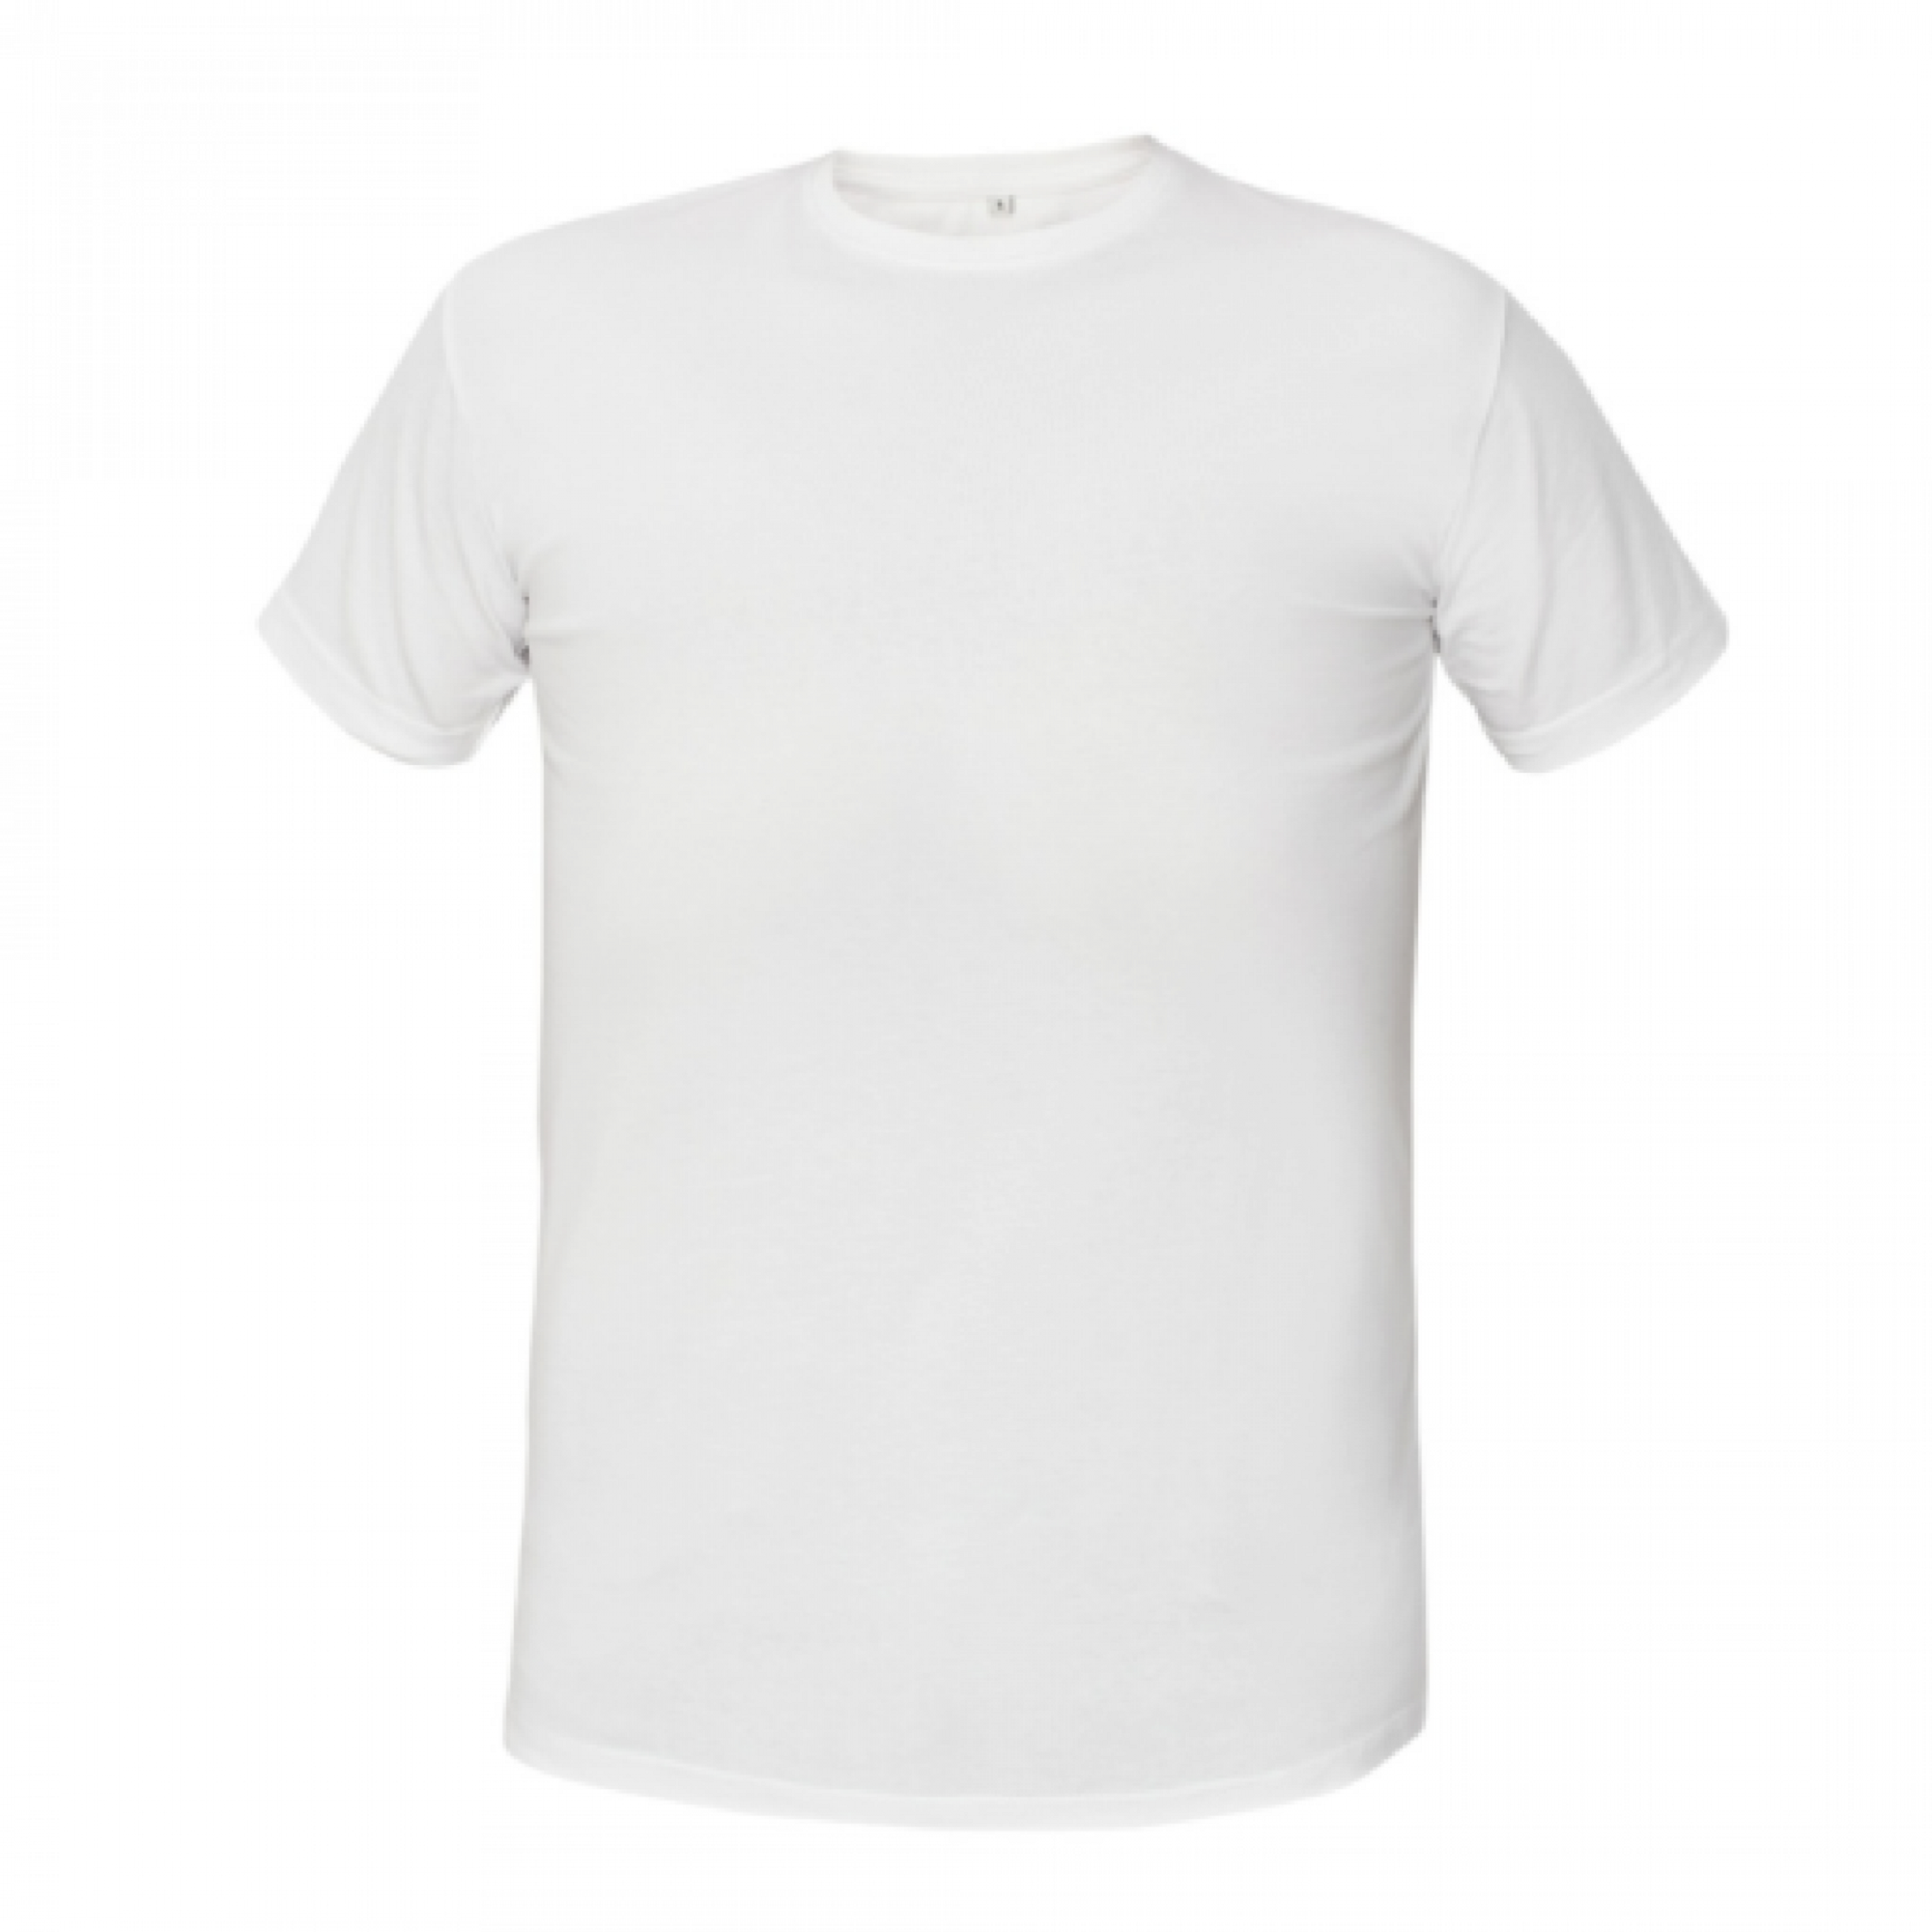 T-Shirt Teesta 160gr ronde hals 100% katoen wit maat S